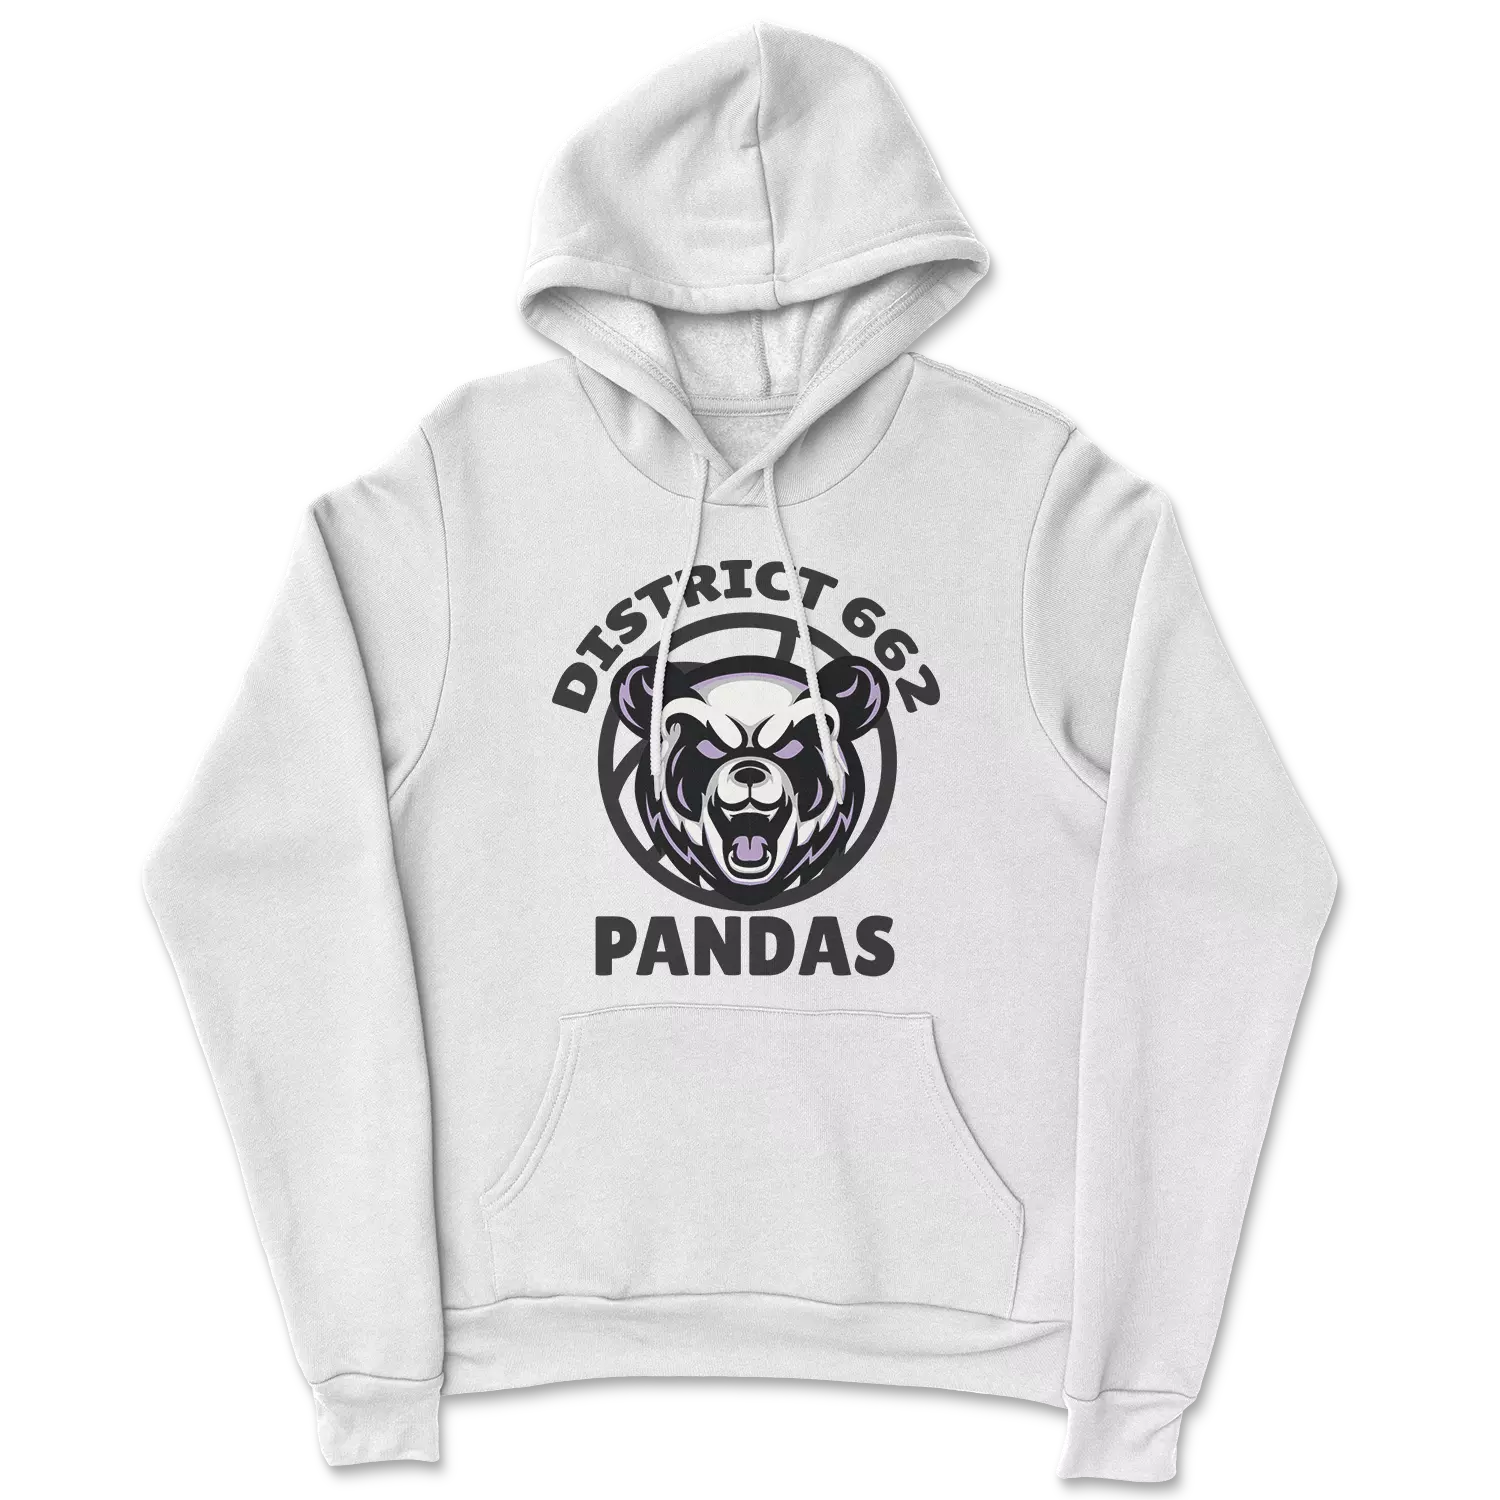 District 662 Pandas Hoodie - White